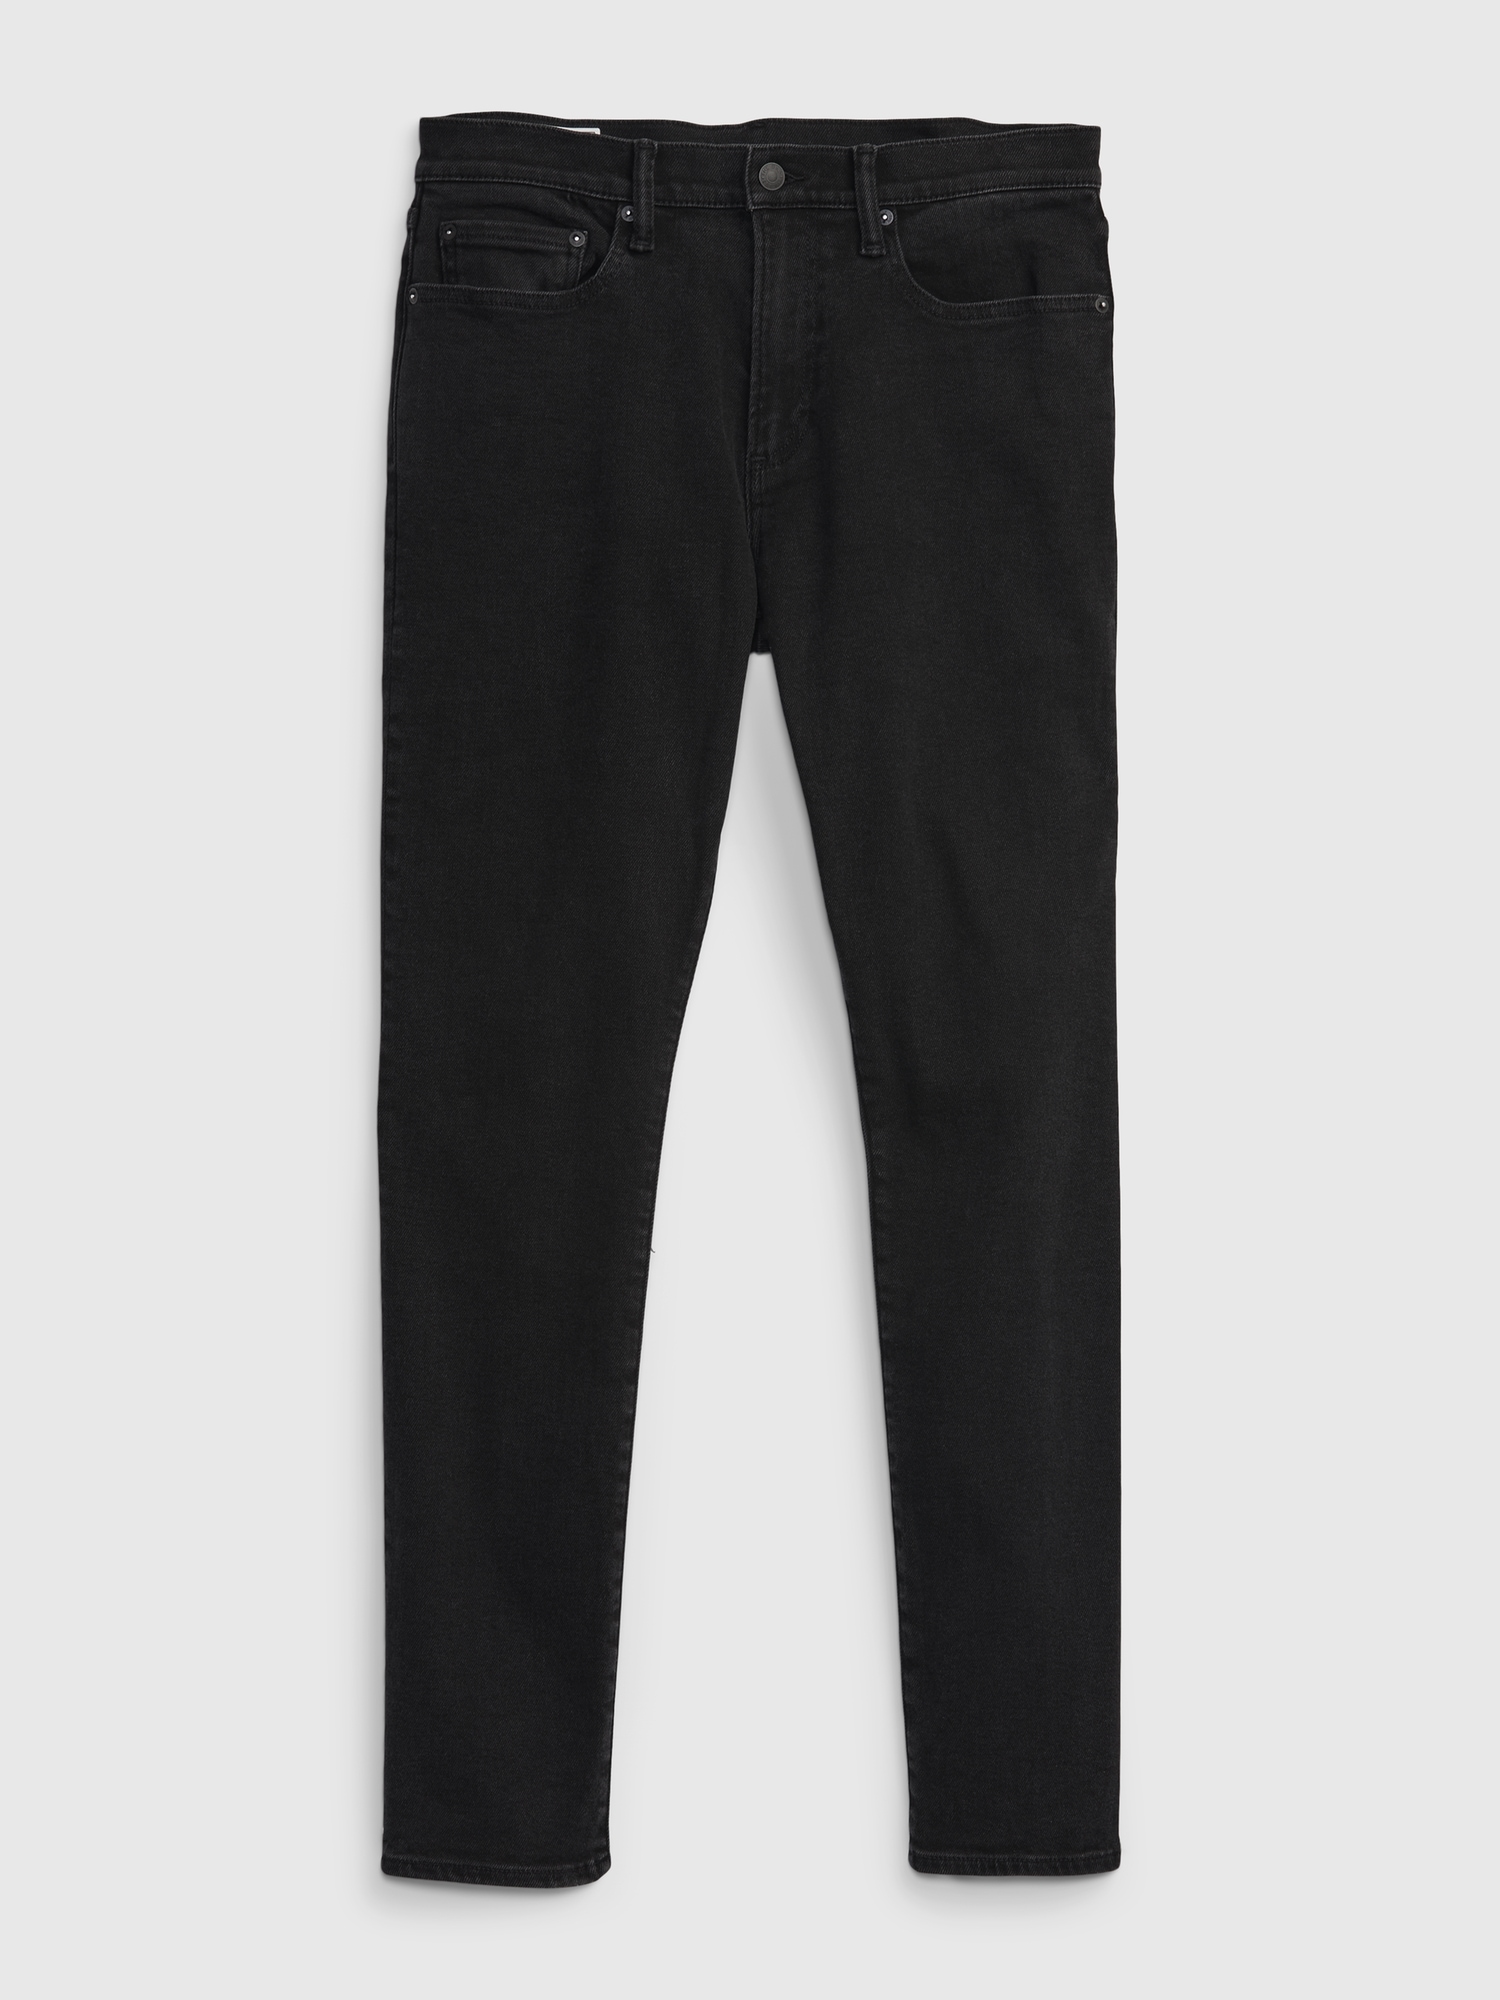 Men's Slim Jeans in Gapflex by Gap Medium Wash Size 31W